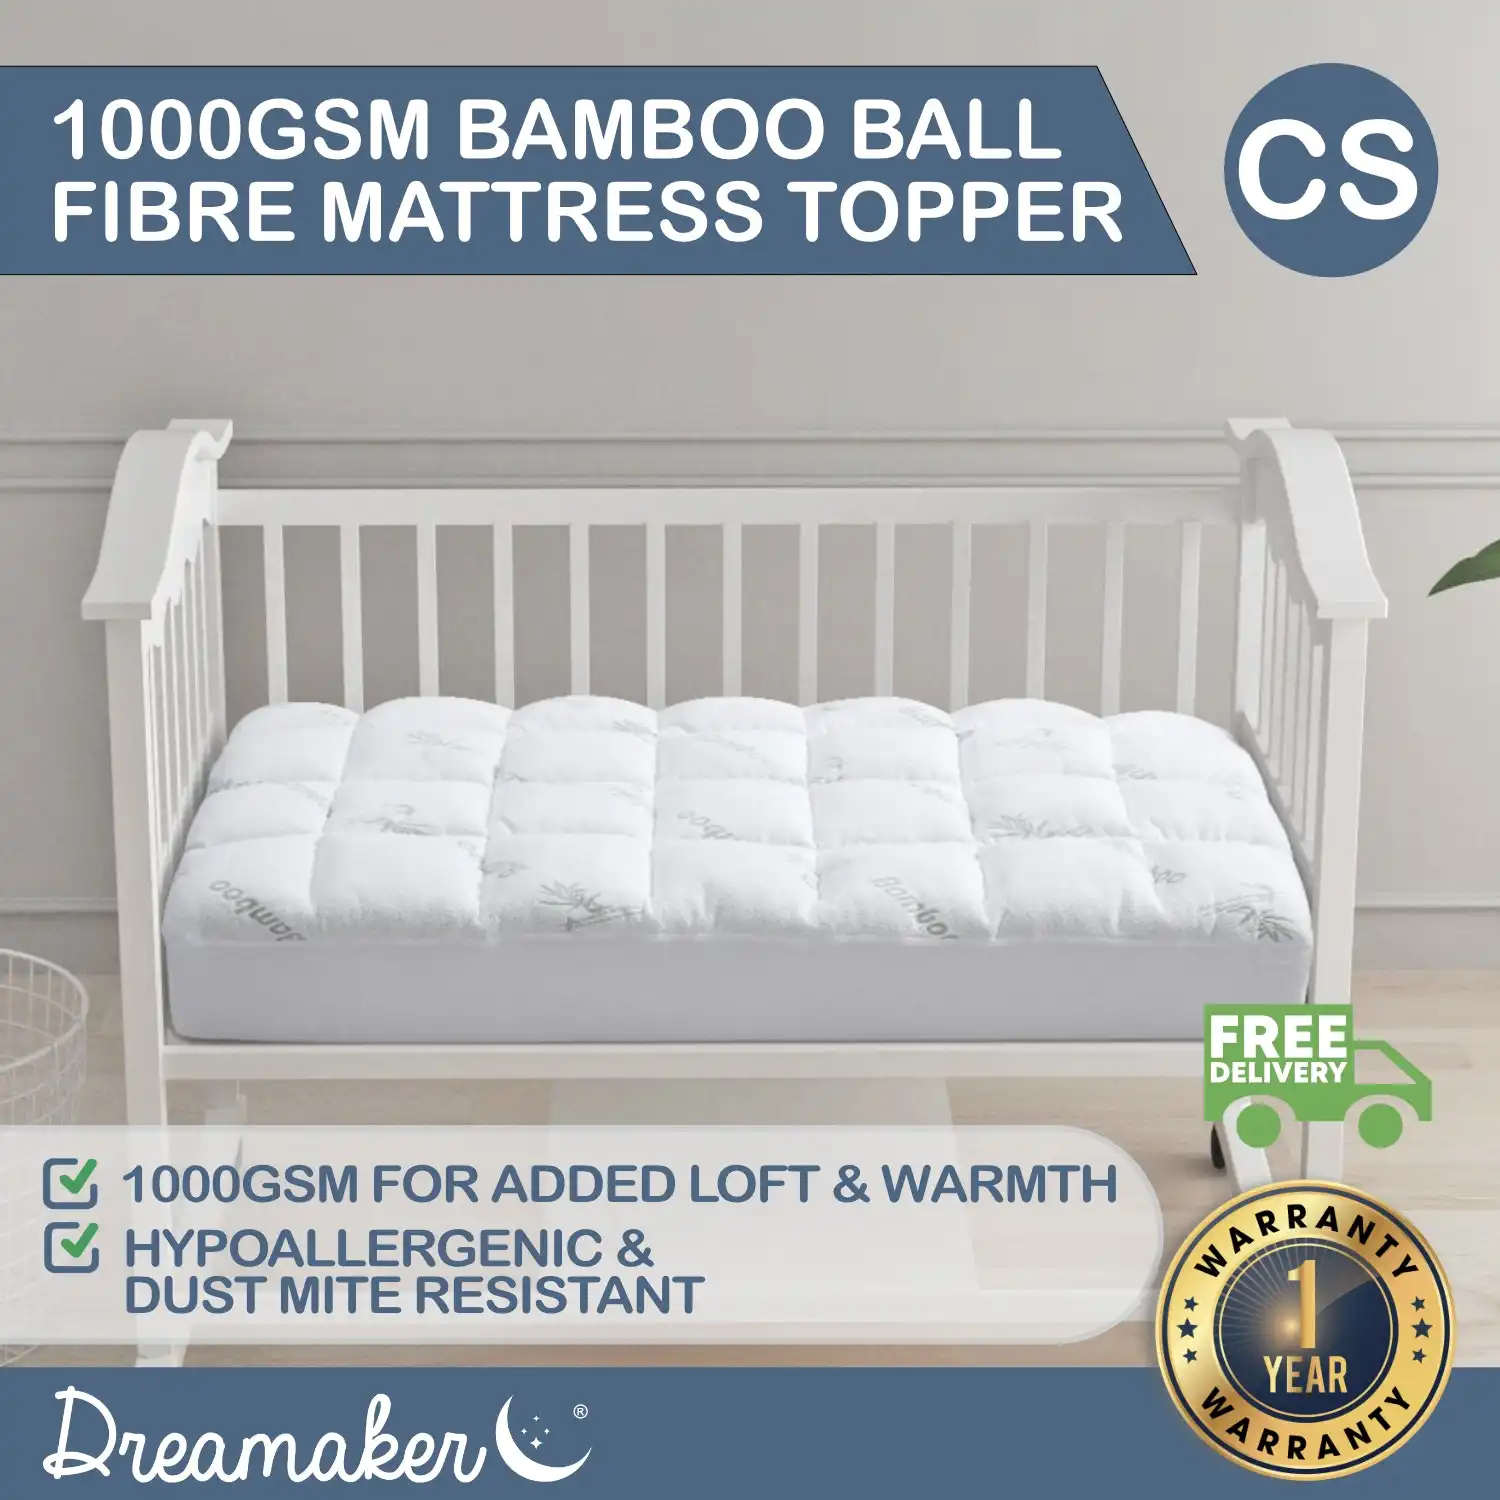 Dreamaker 1000GSM Bamboo Covered Ball Fibre Mattress Topper - Cot Standard